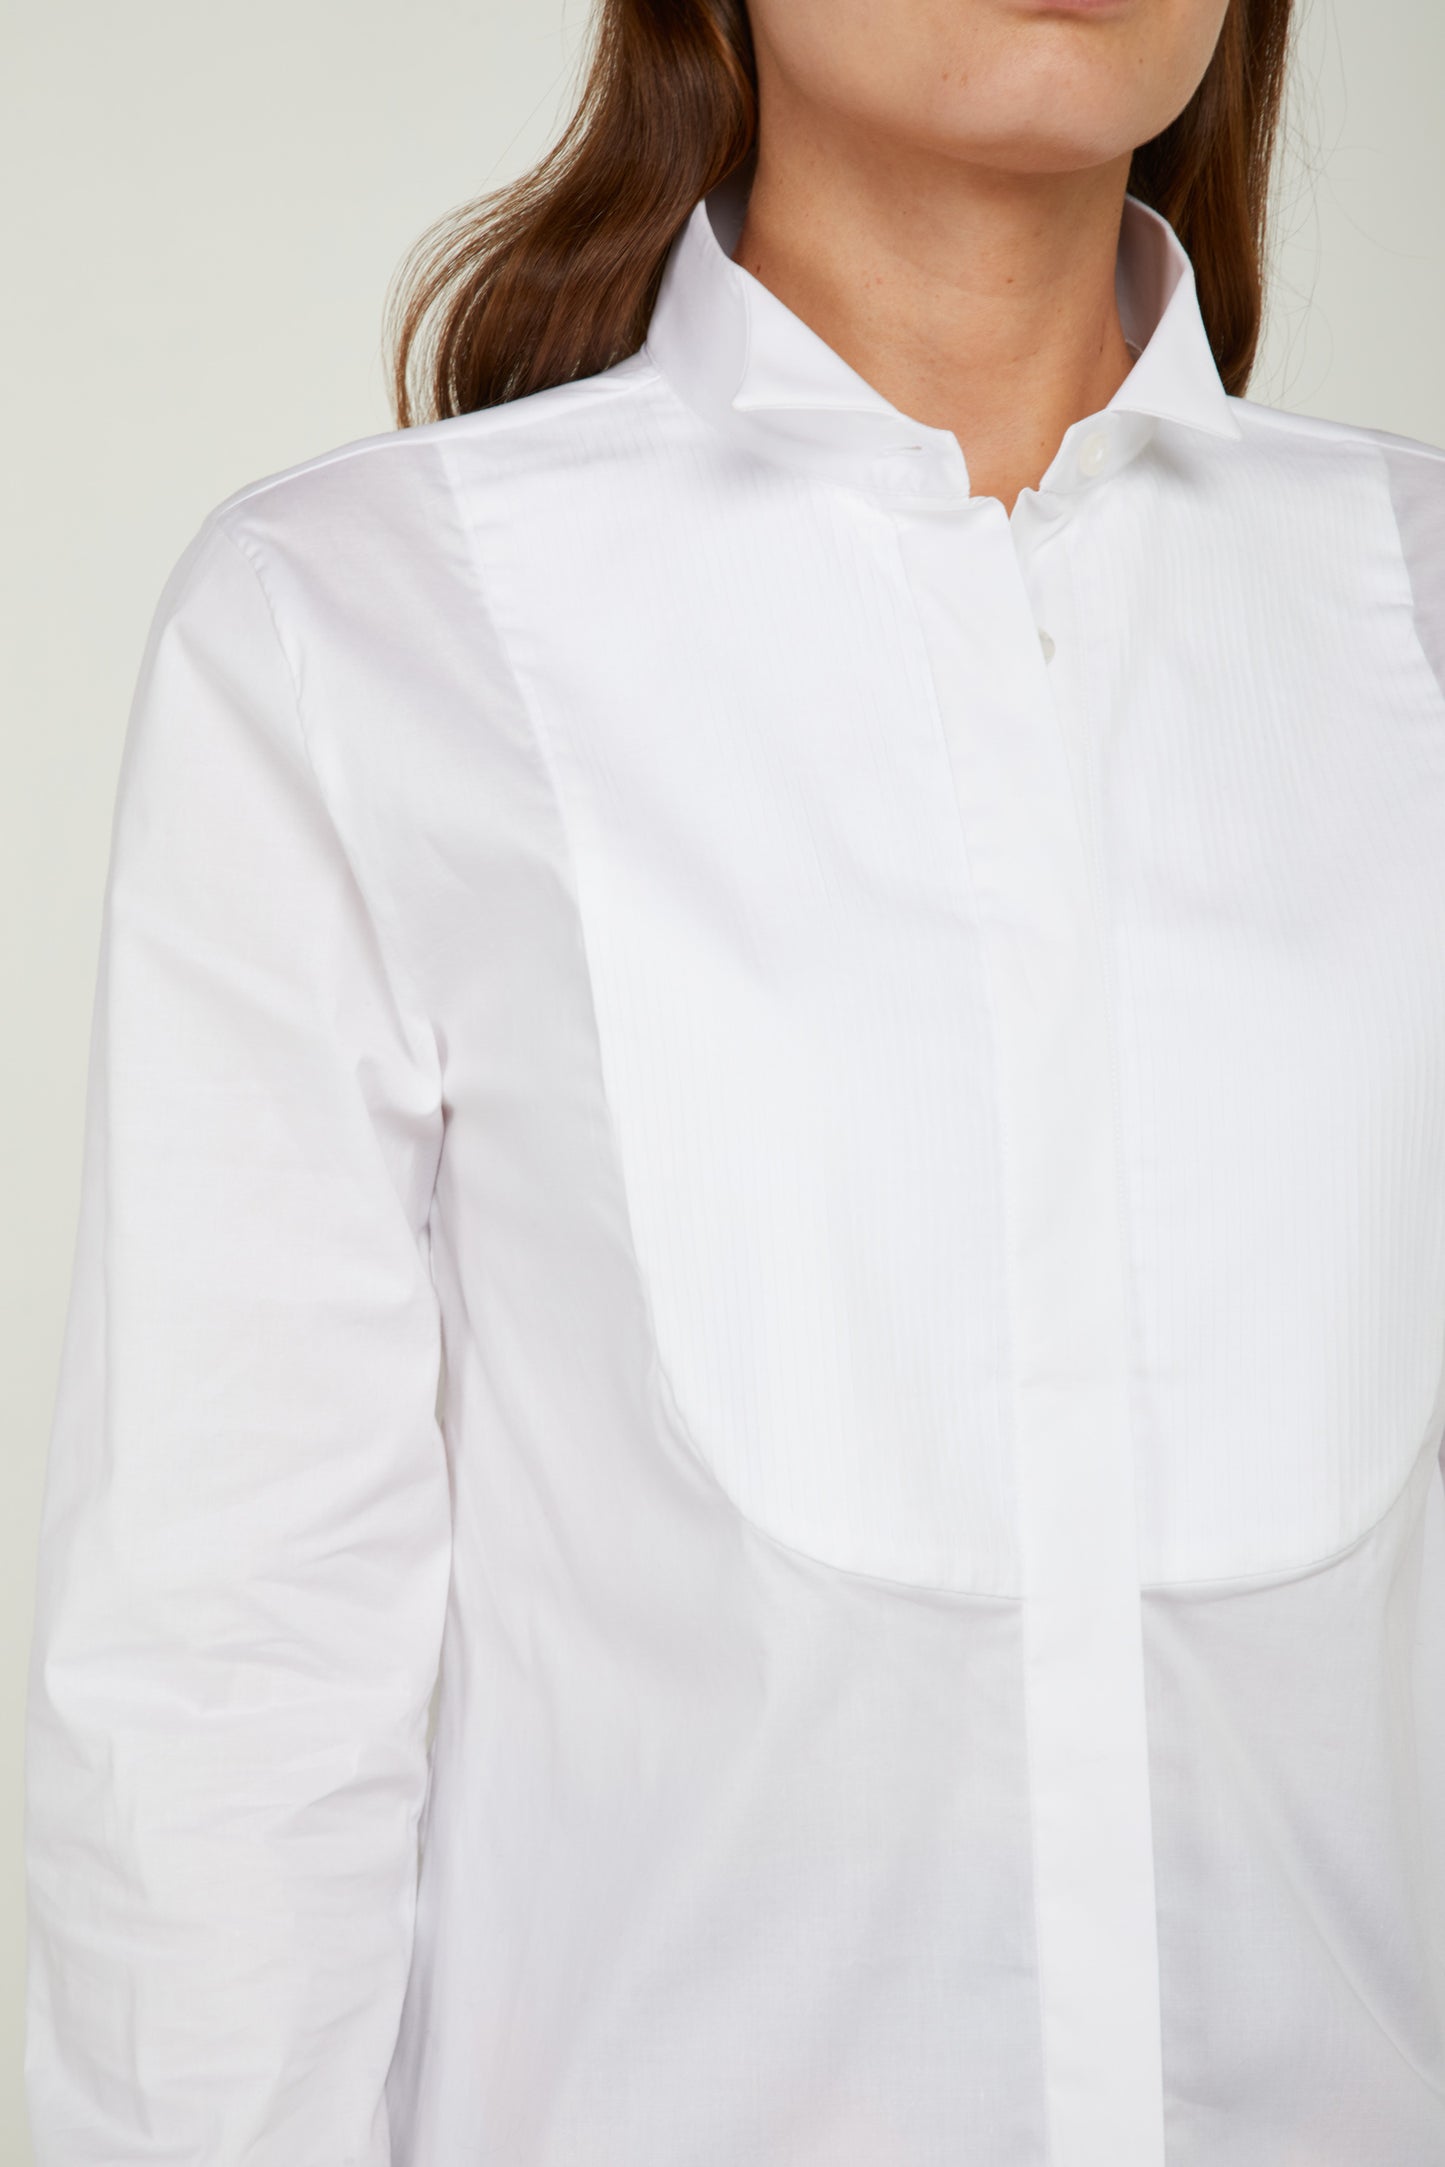 GAELLE White Shirt